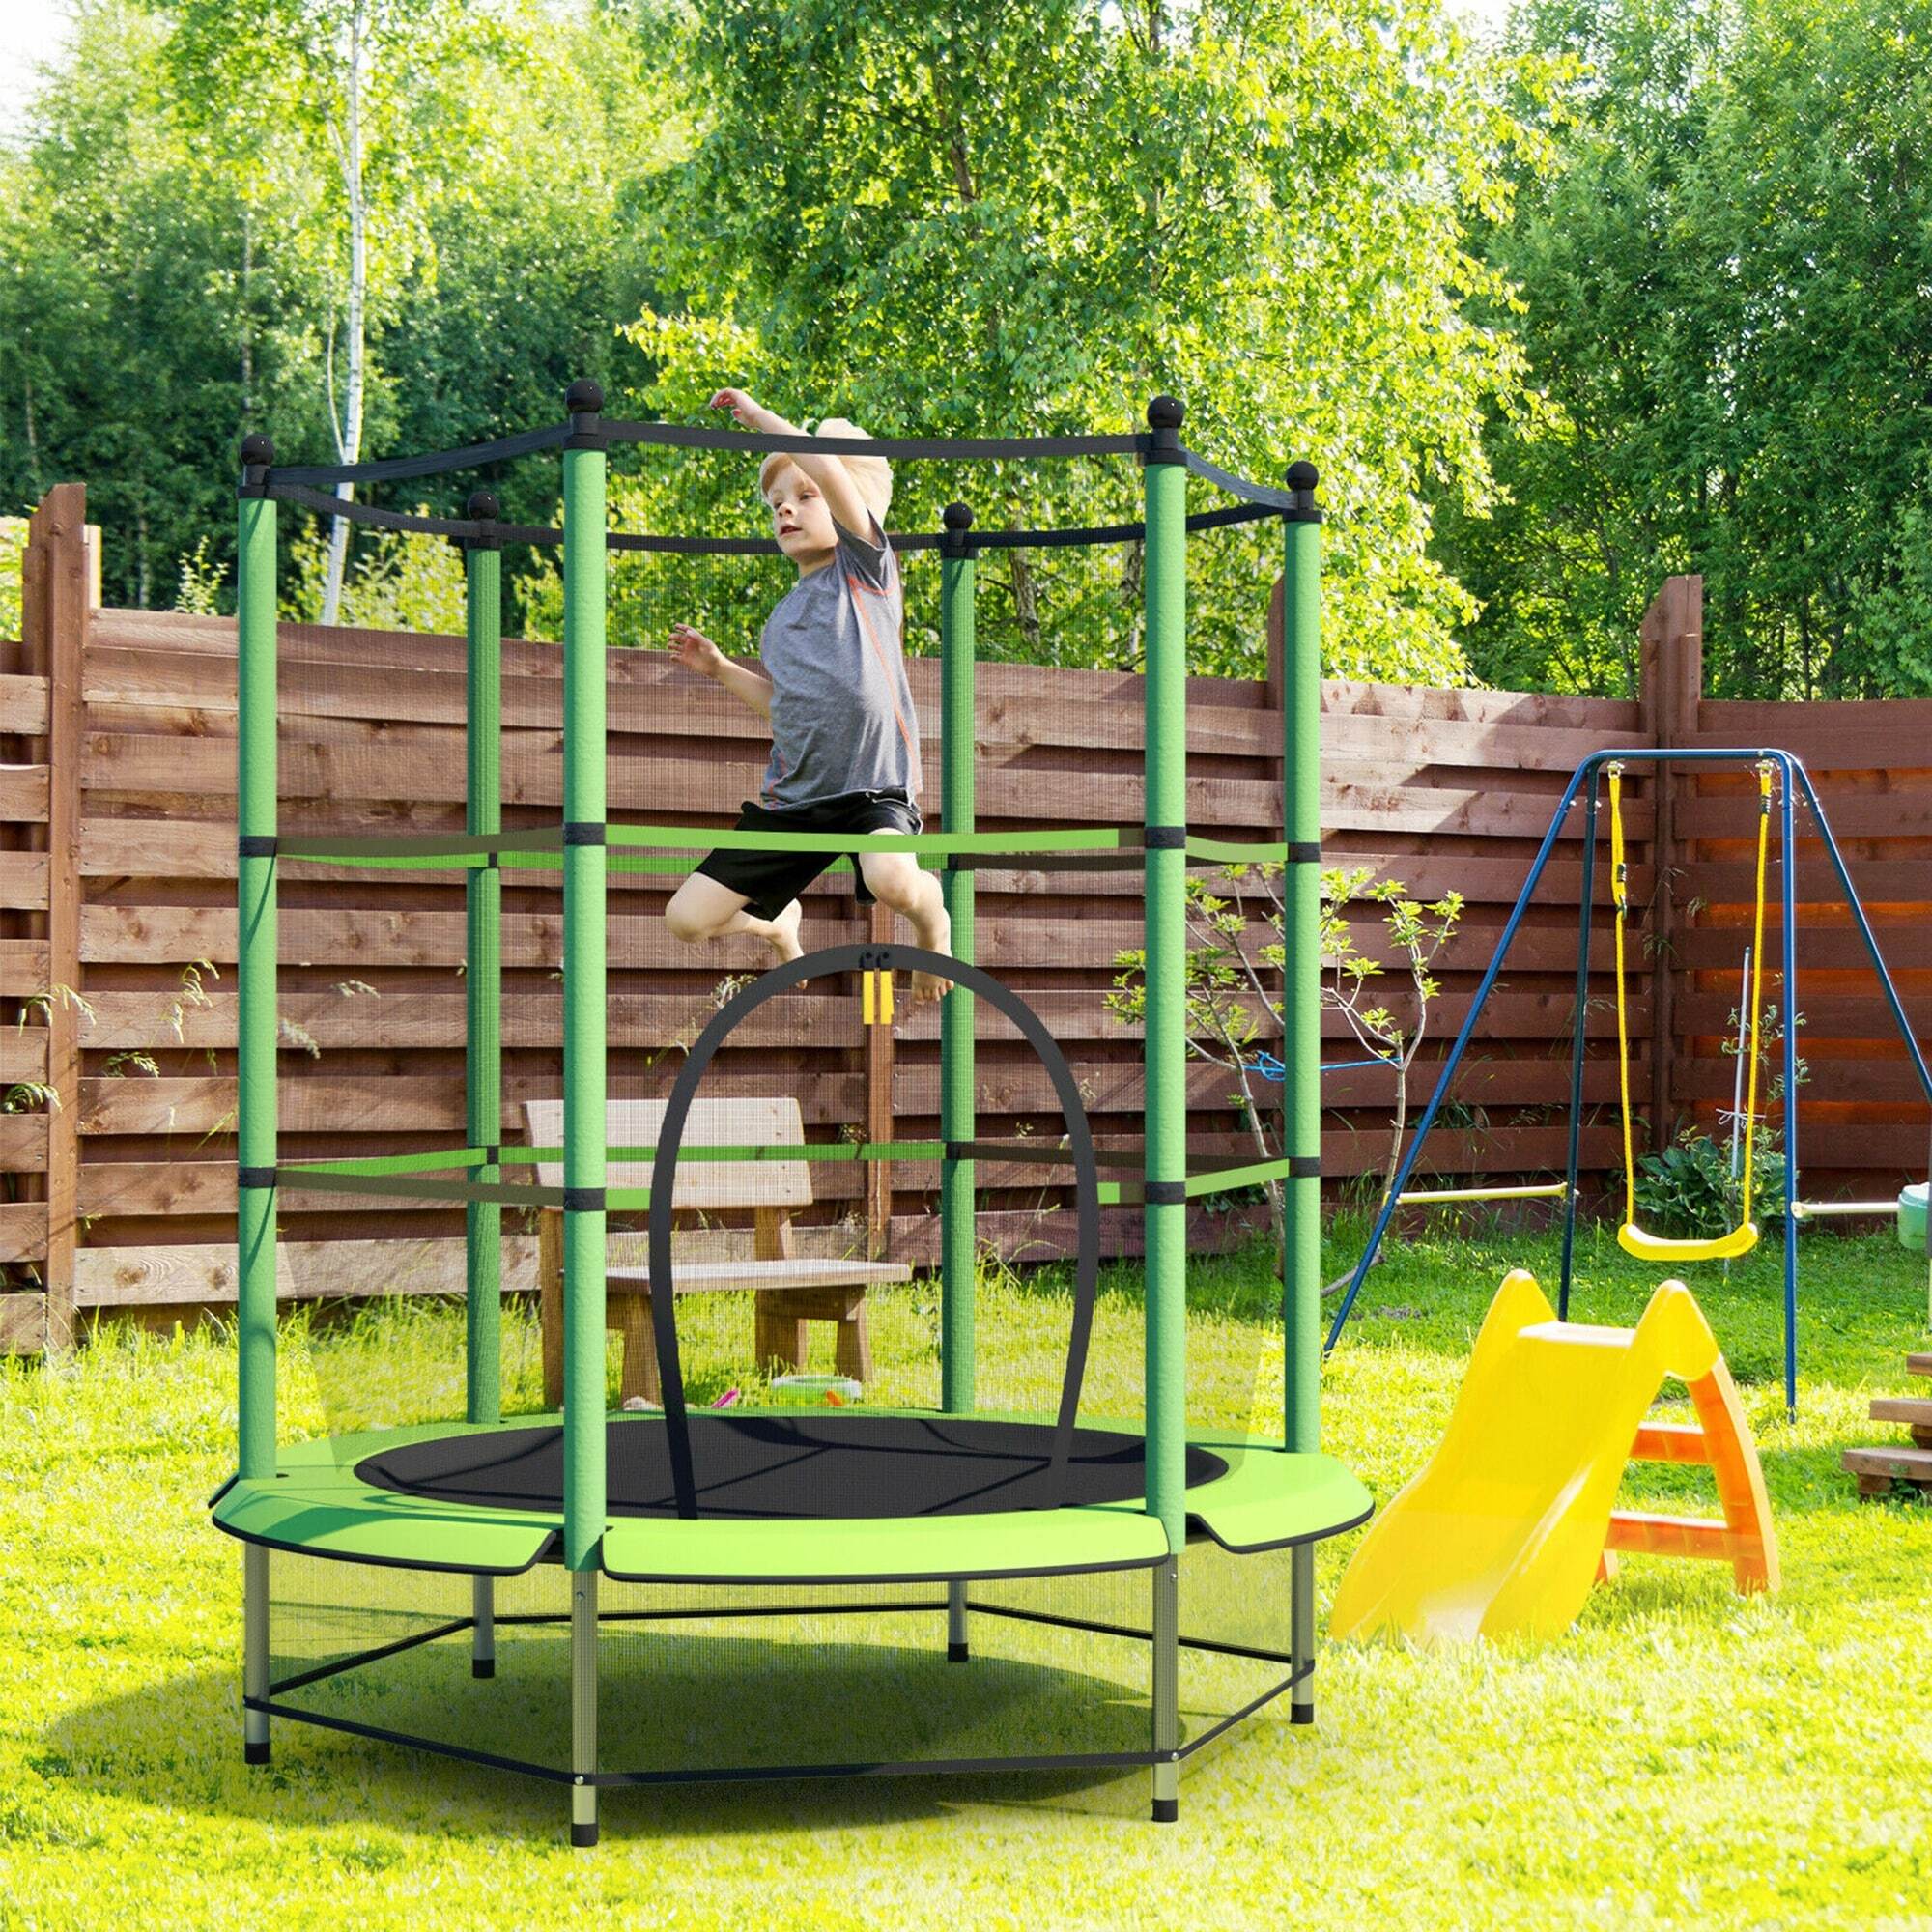 Trampolines for Children’s Exercise Equipment